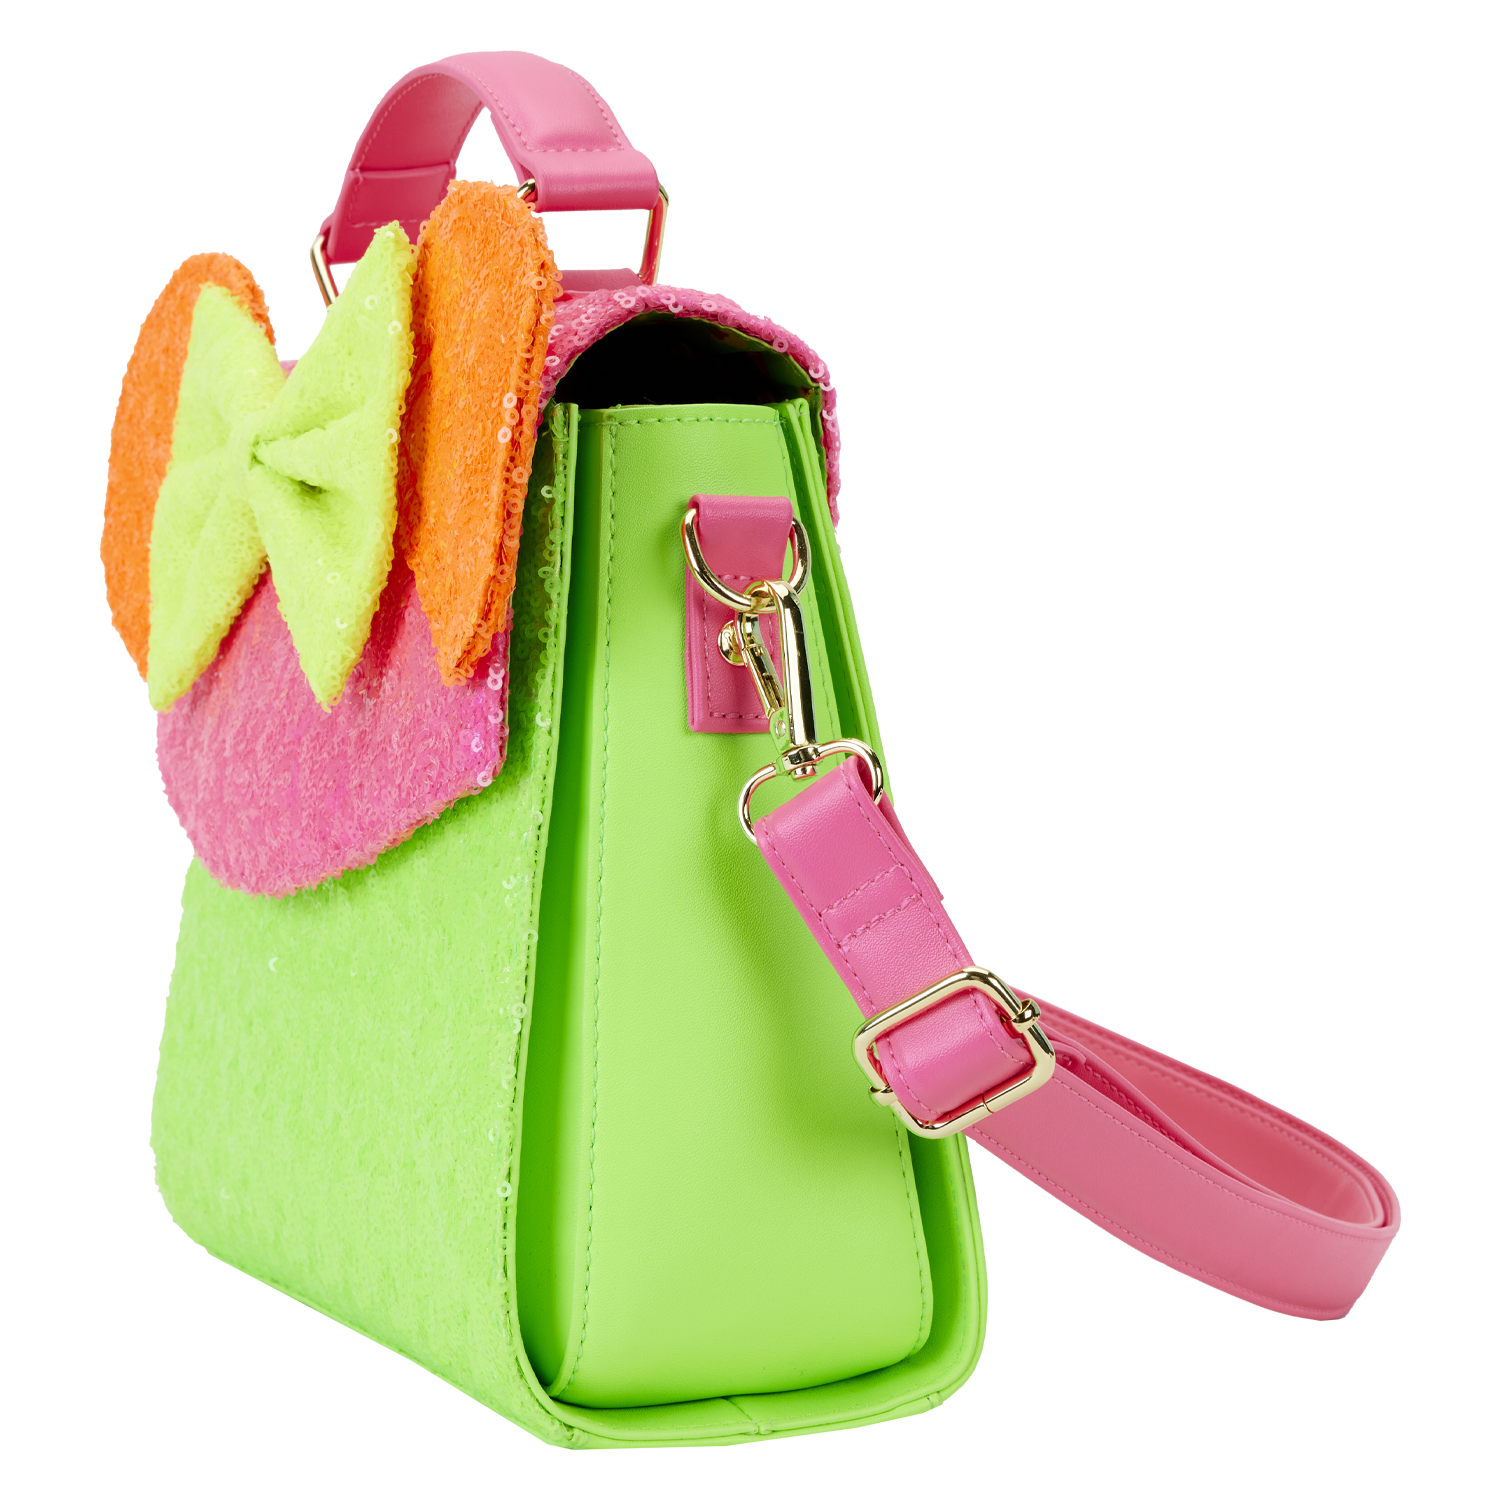 Neon Orange Crocodile Skin Duffle Bag – Tote&Carry